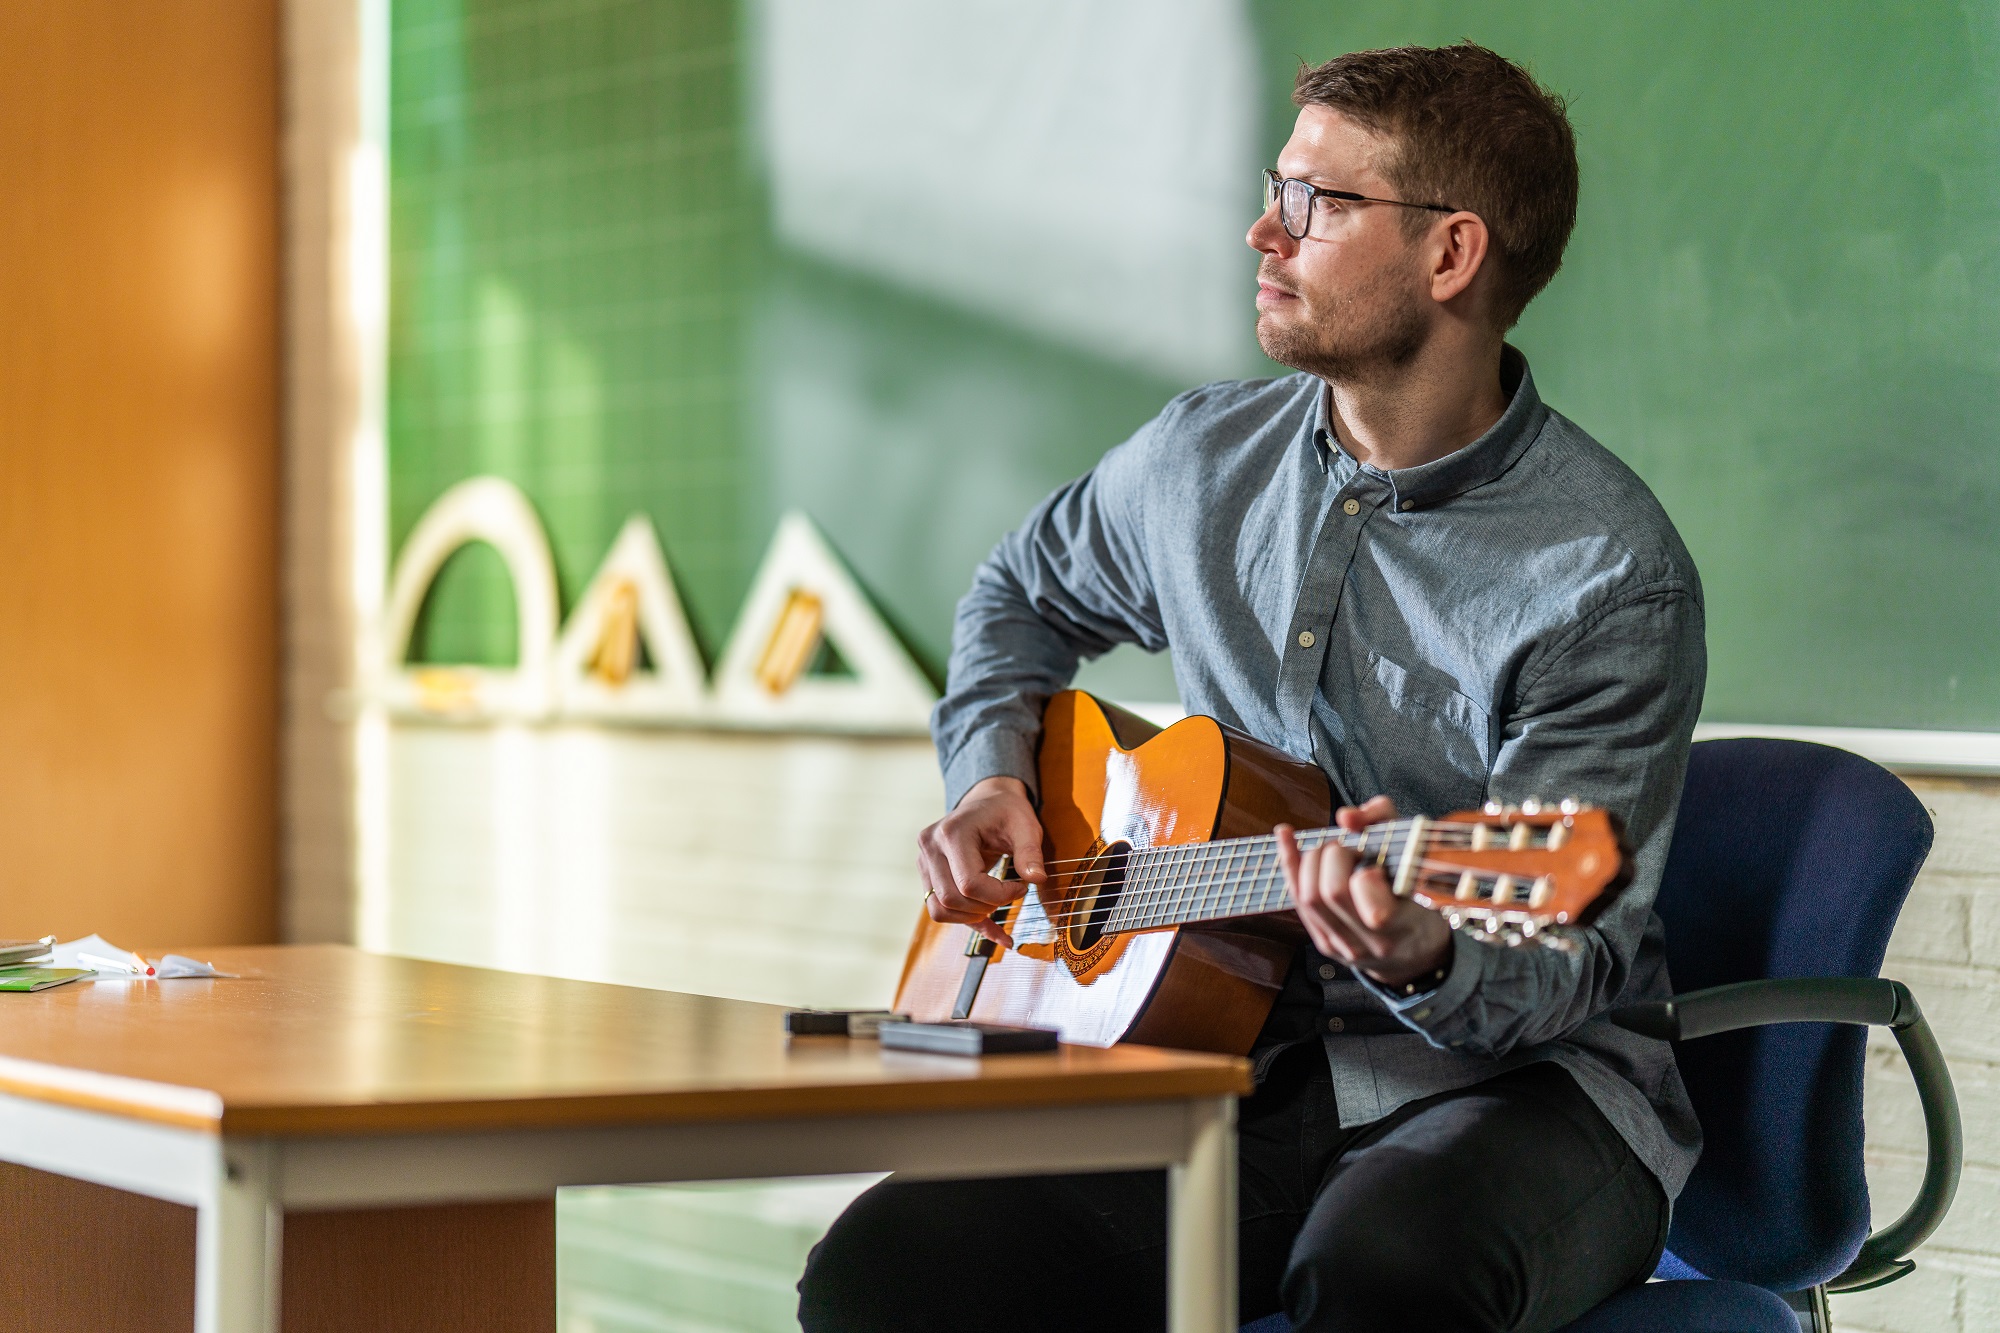 lærer som spiller på gitar i klasserom